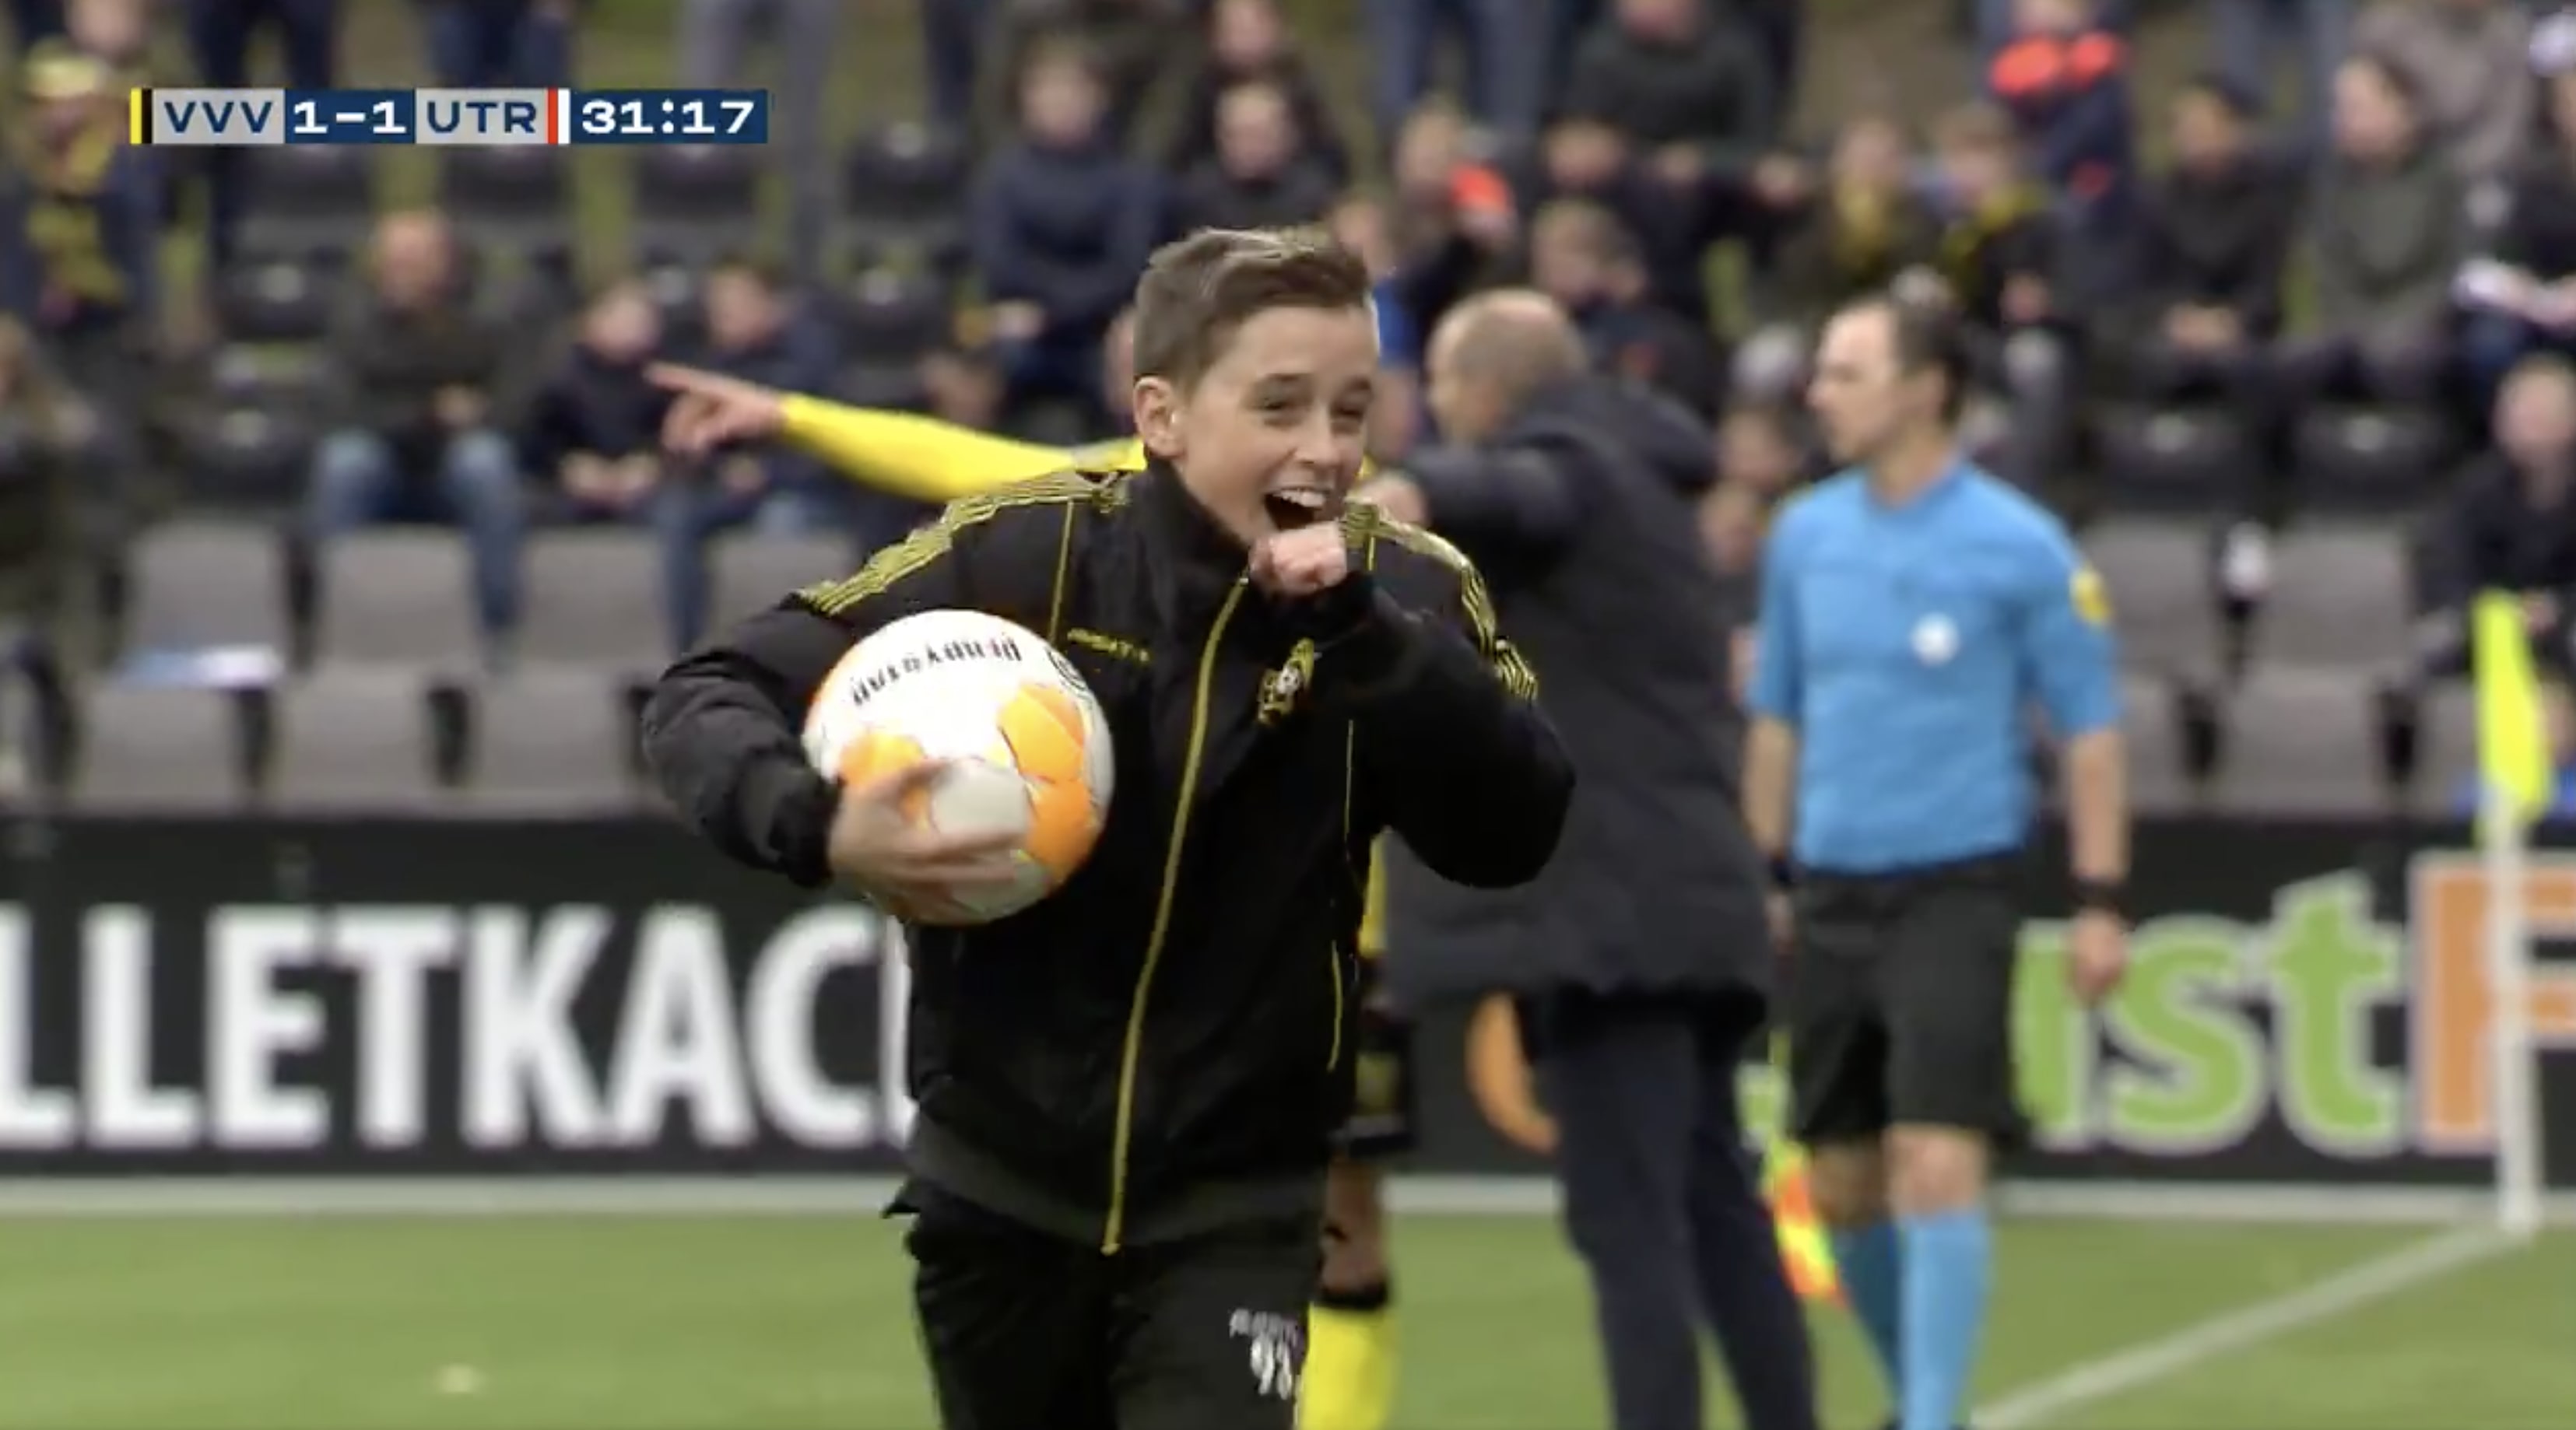 Ballenjongen Lars zorgt met snelle actie voor doelpunt VVV-Venlo